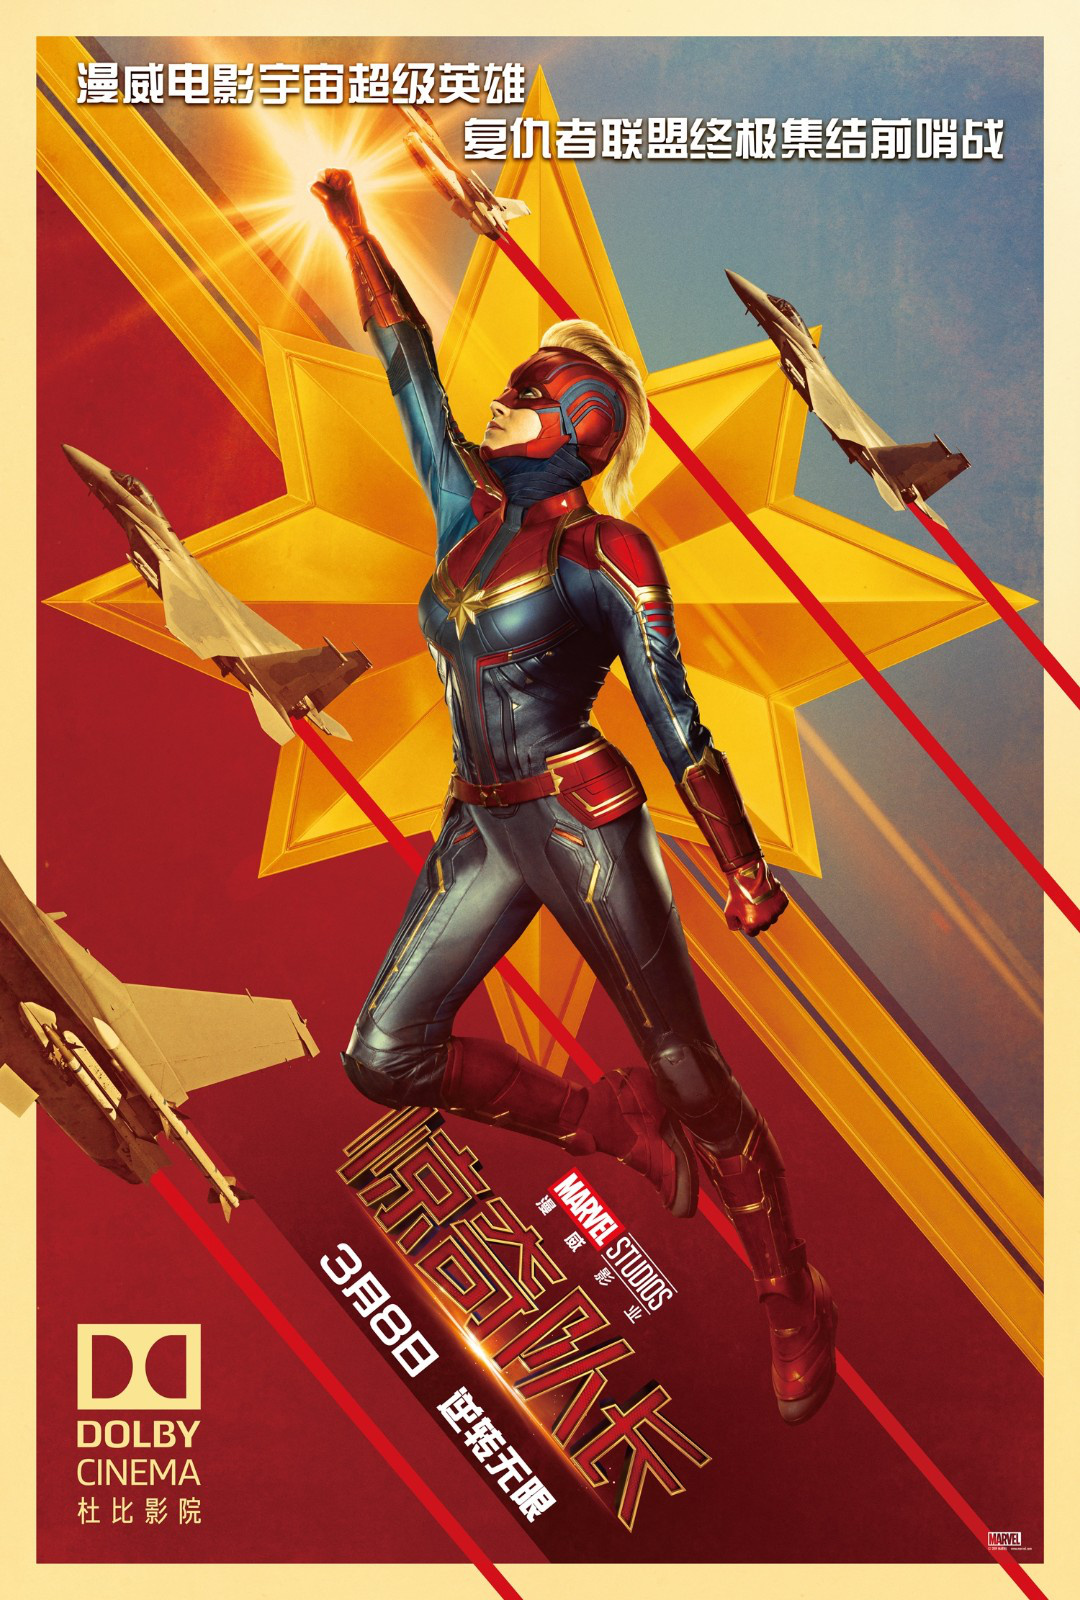 《惊奇队长》曝杜比影院版海报 全新超级英雄问世